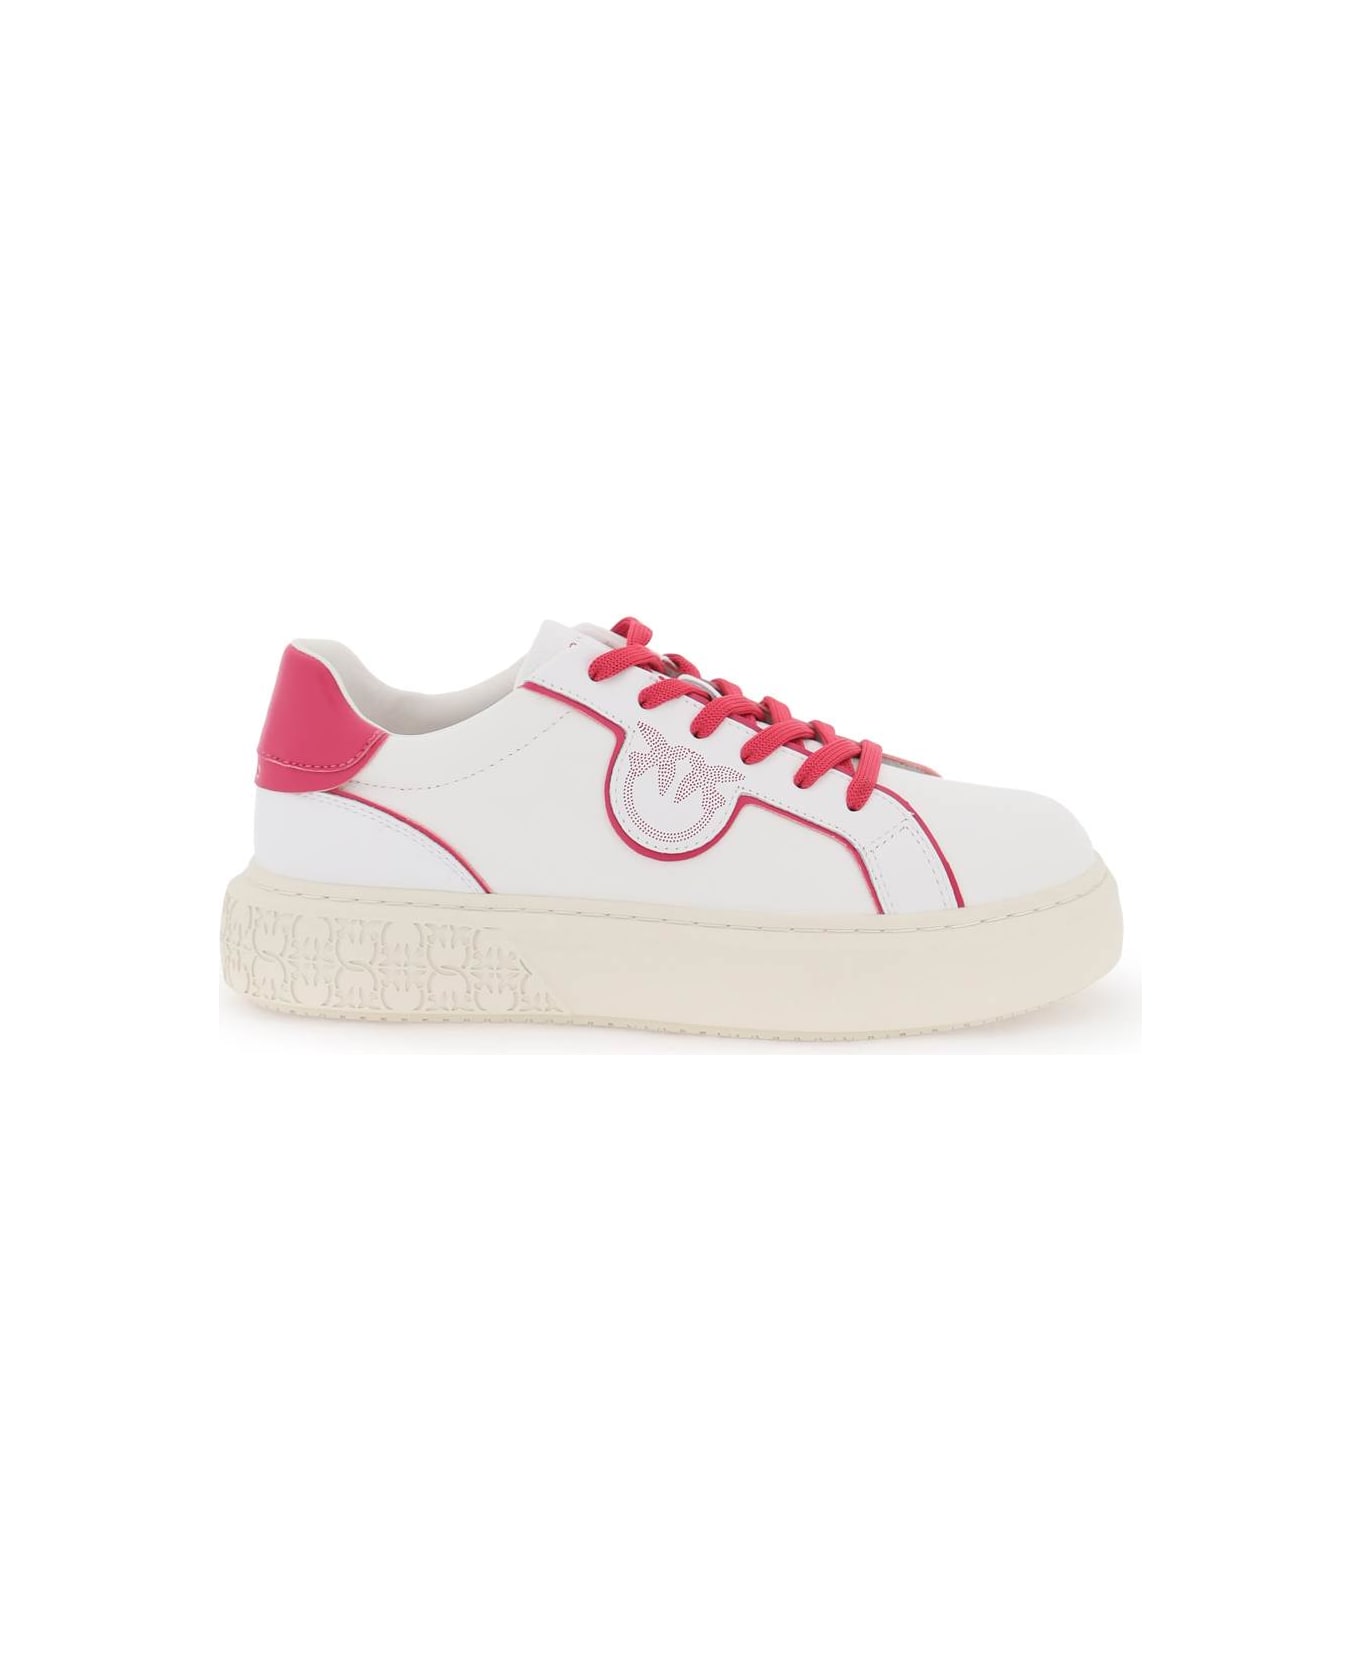 Pinko Leather Sneakers - WHITE PINK PINKO (White)